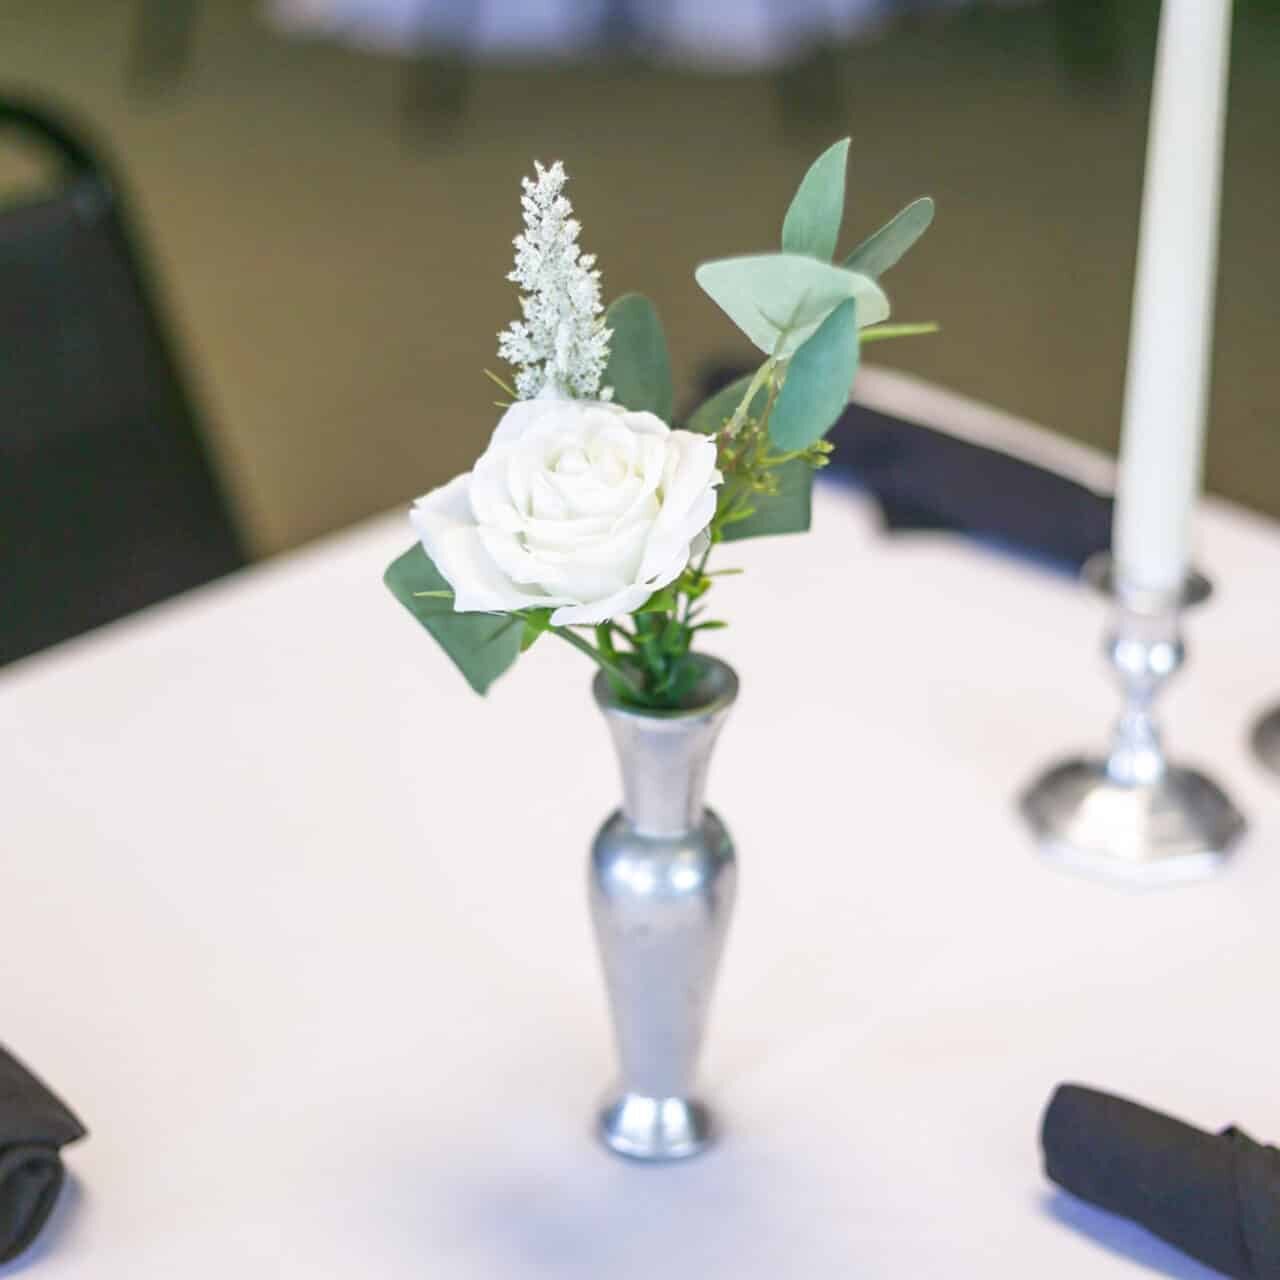 Flower Bud Vase on White Tablecloth